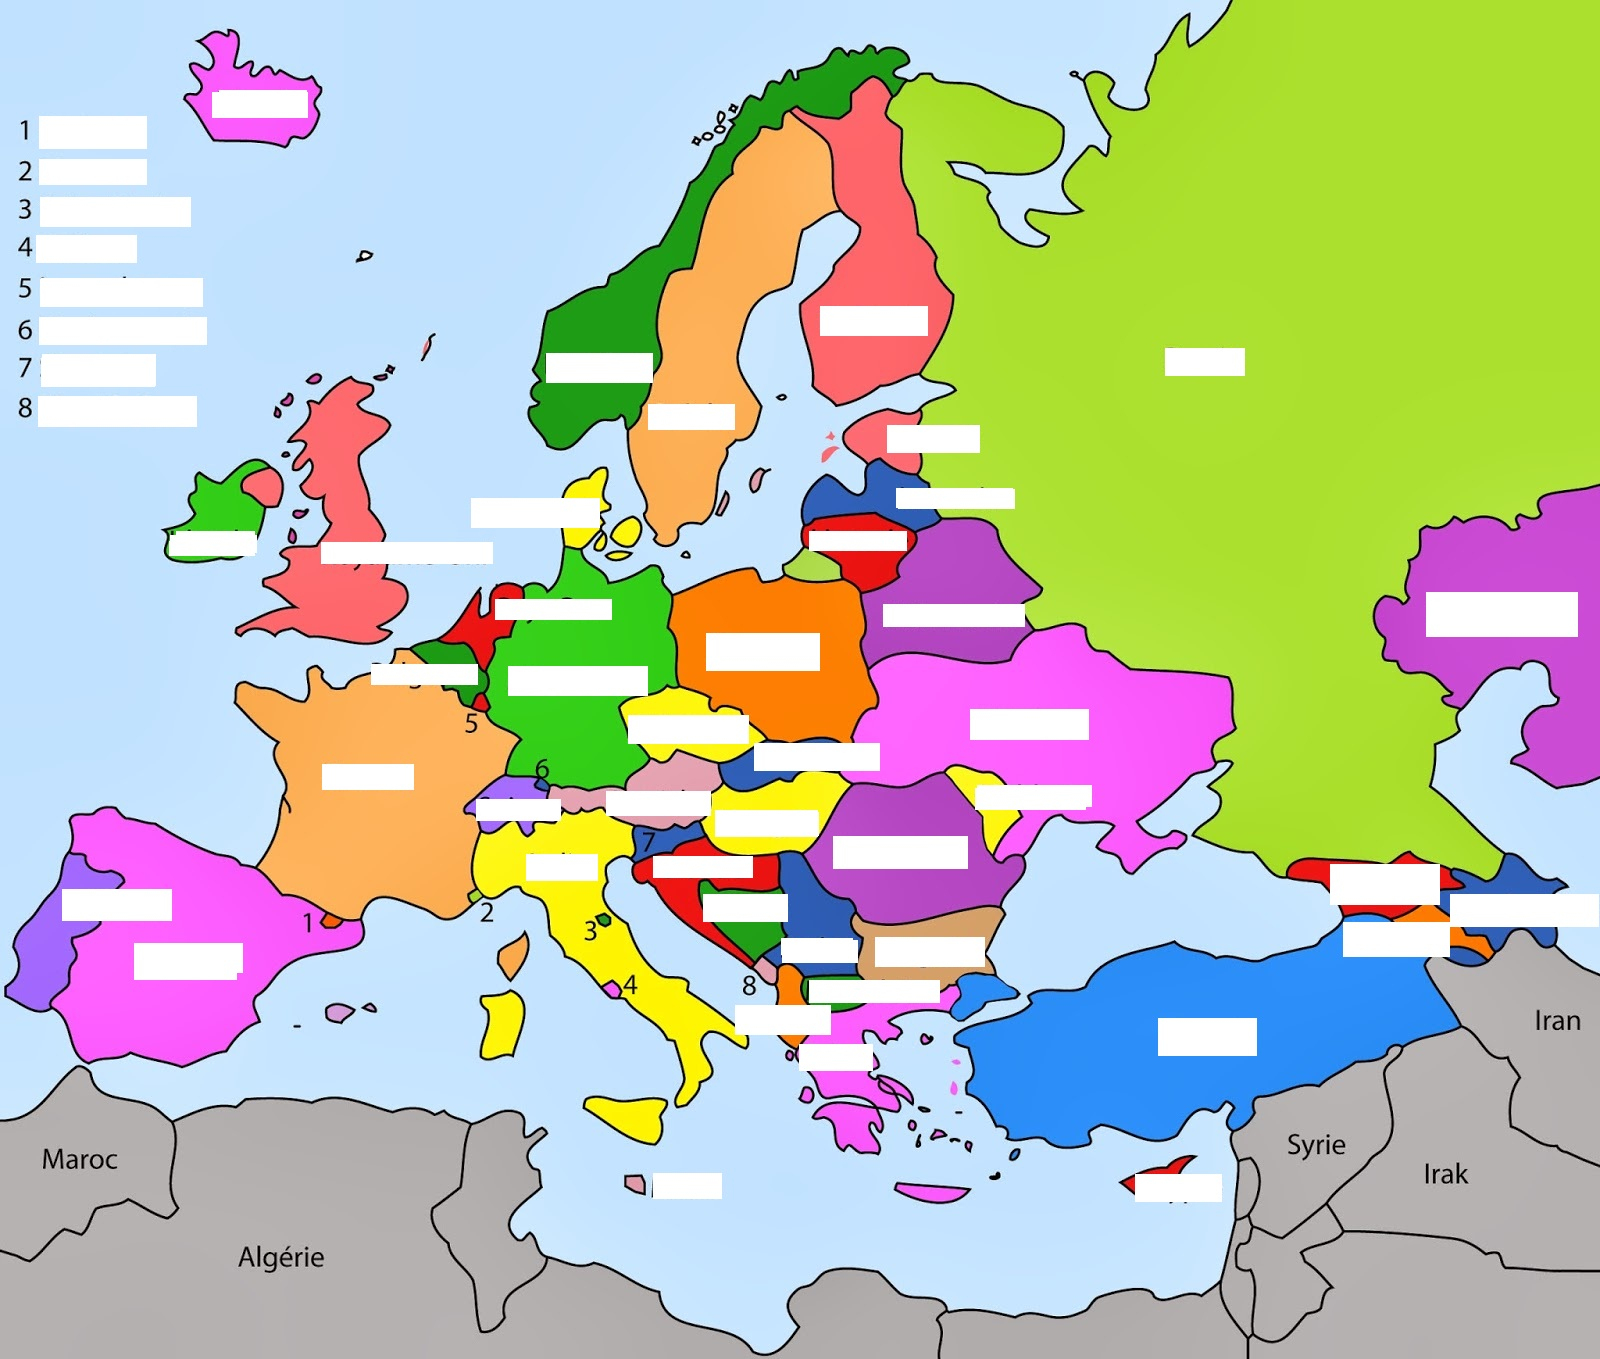 Les Pays De L'europe Et Leurs Capitales tout Pays D Europe Et Capitales